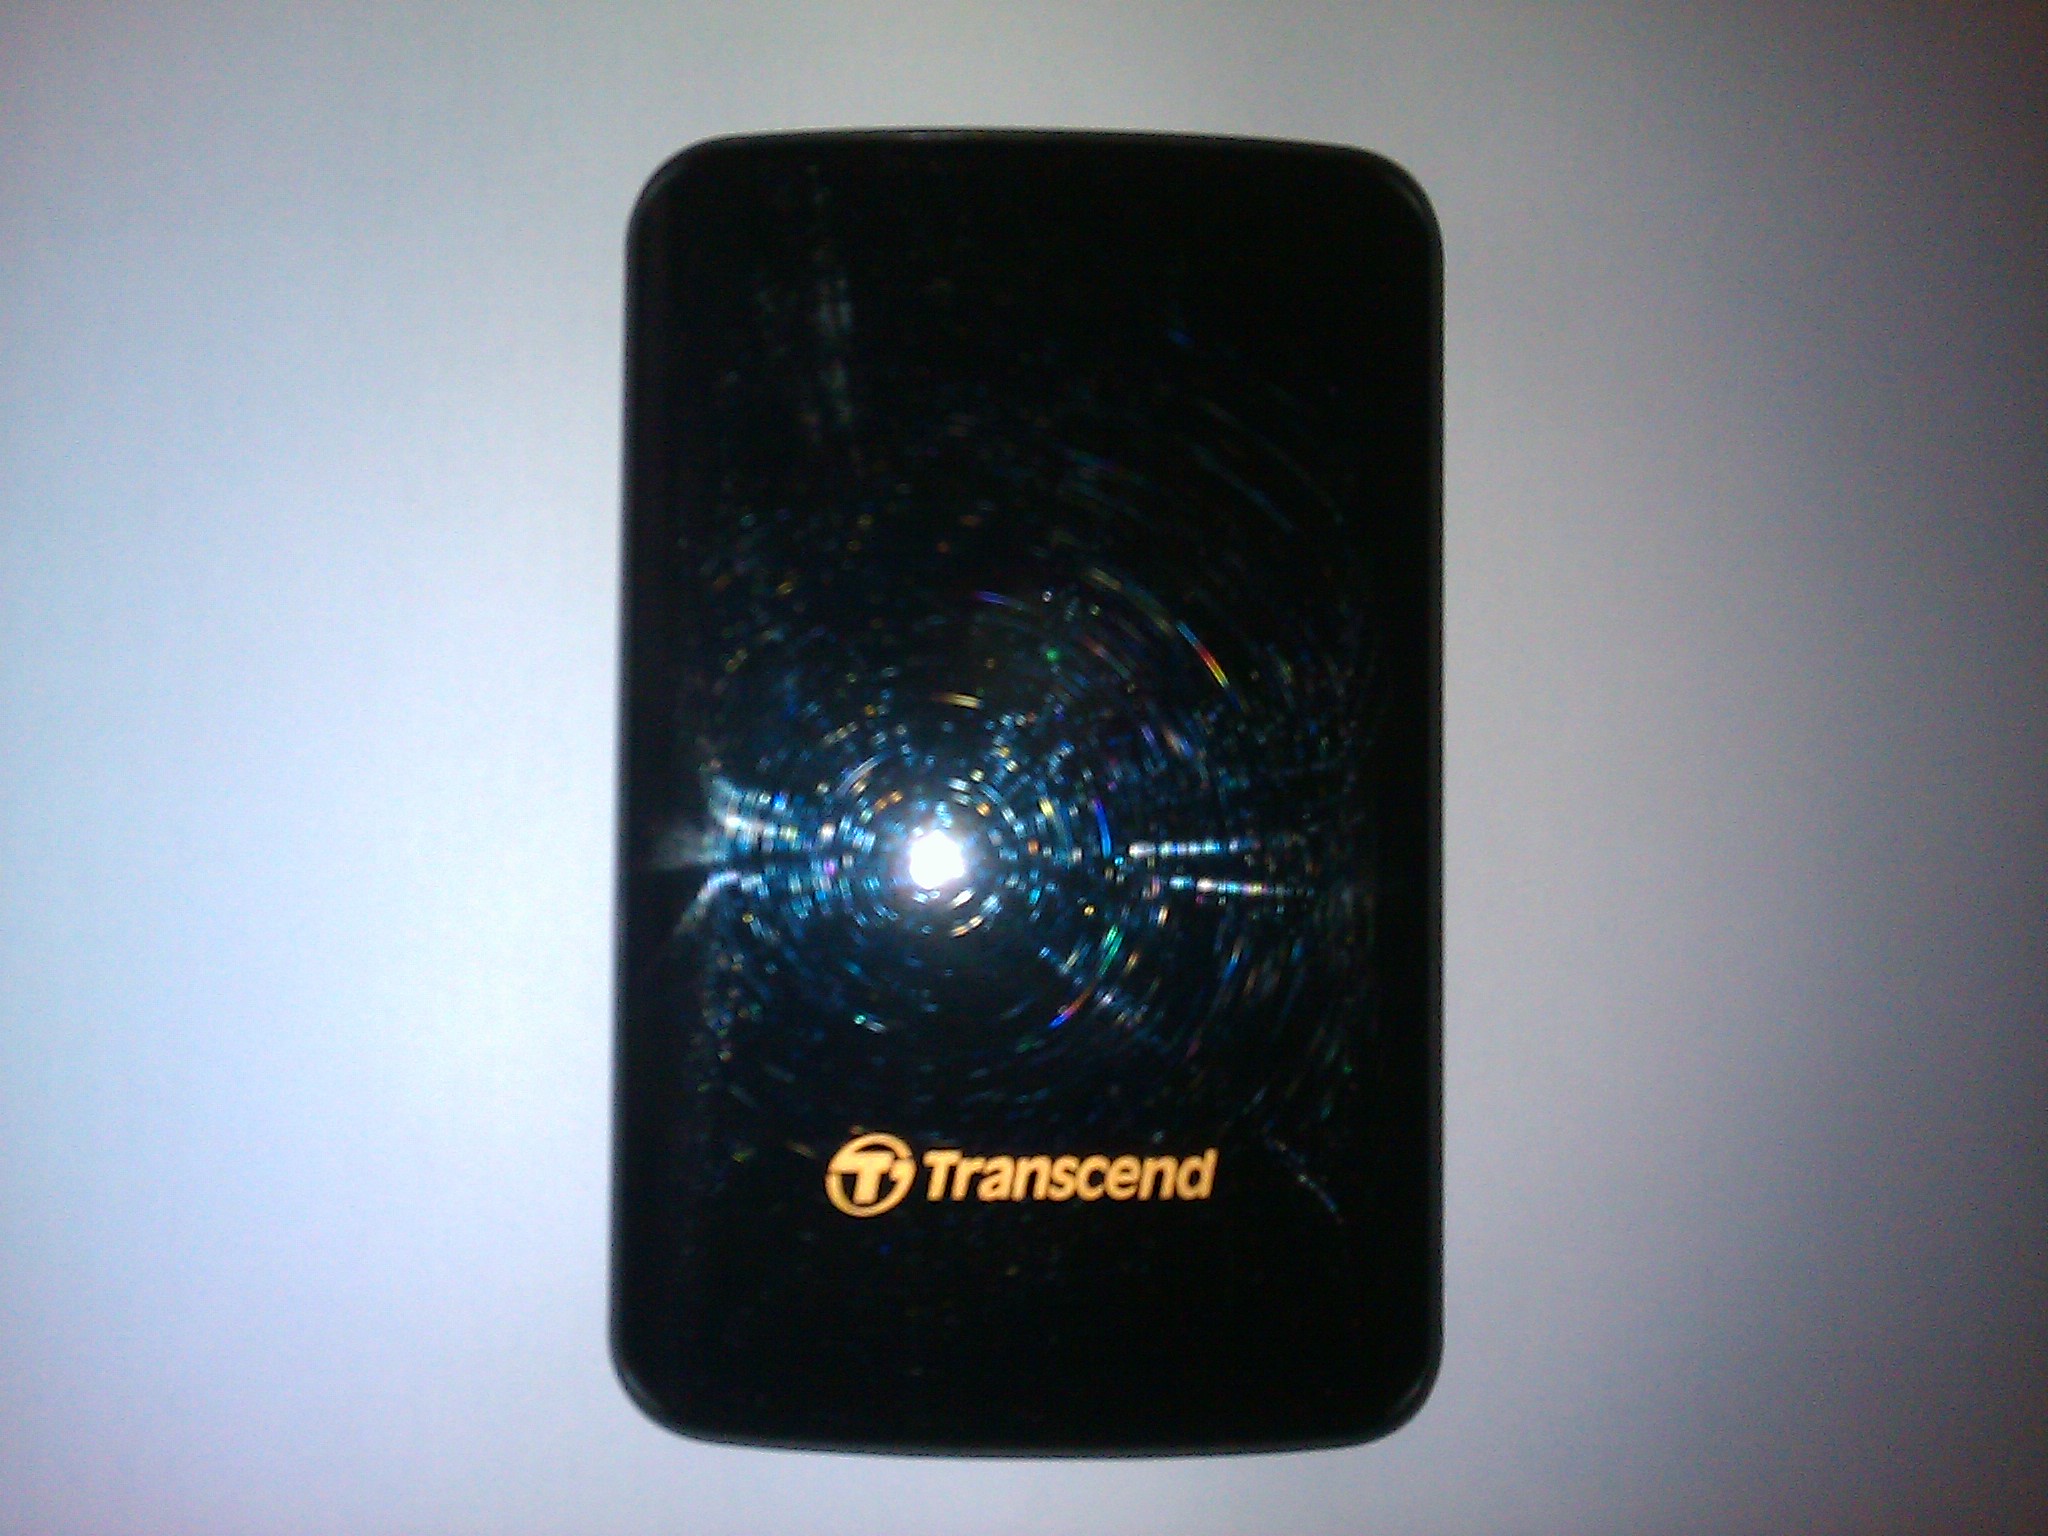 Transcend 500GB USB 3.0 Portable Hard Drive large image 1